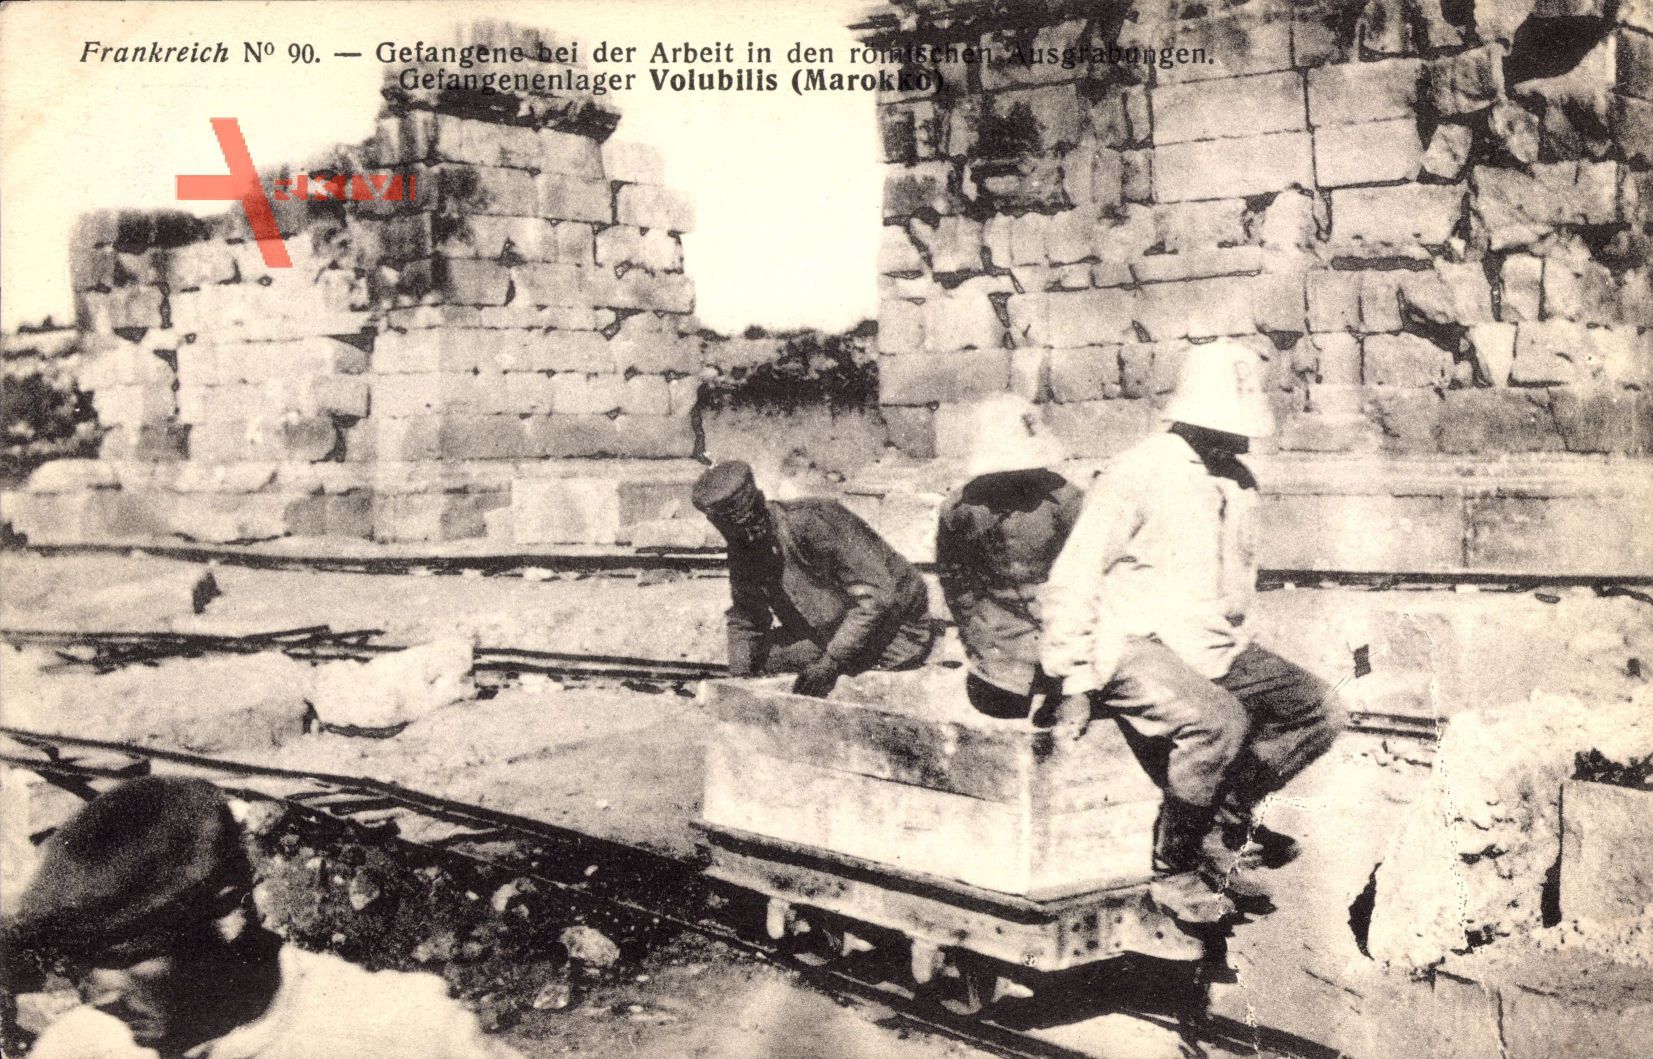 Volubilis Marokko, Kriegsgefangene bei der Arbeit in römischen Ausgrabungen